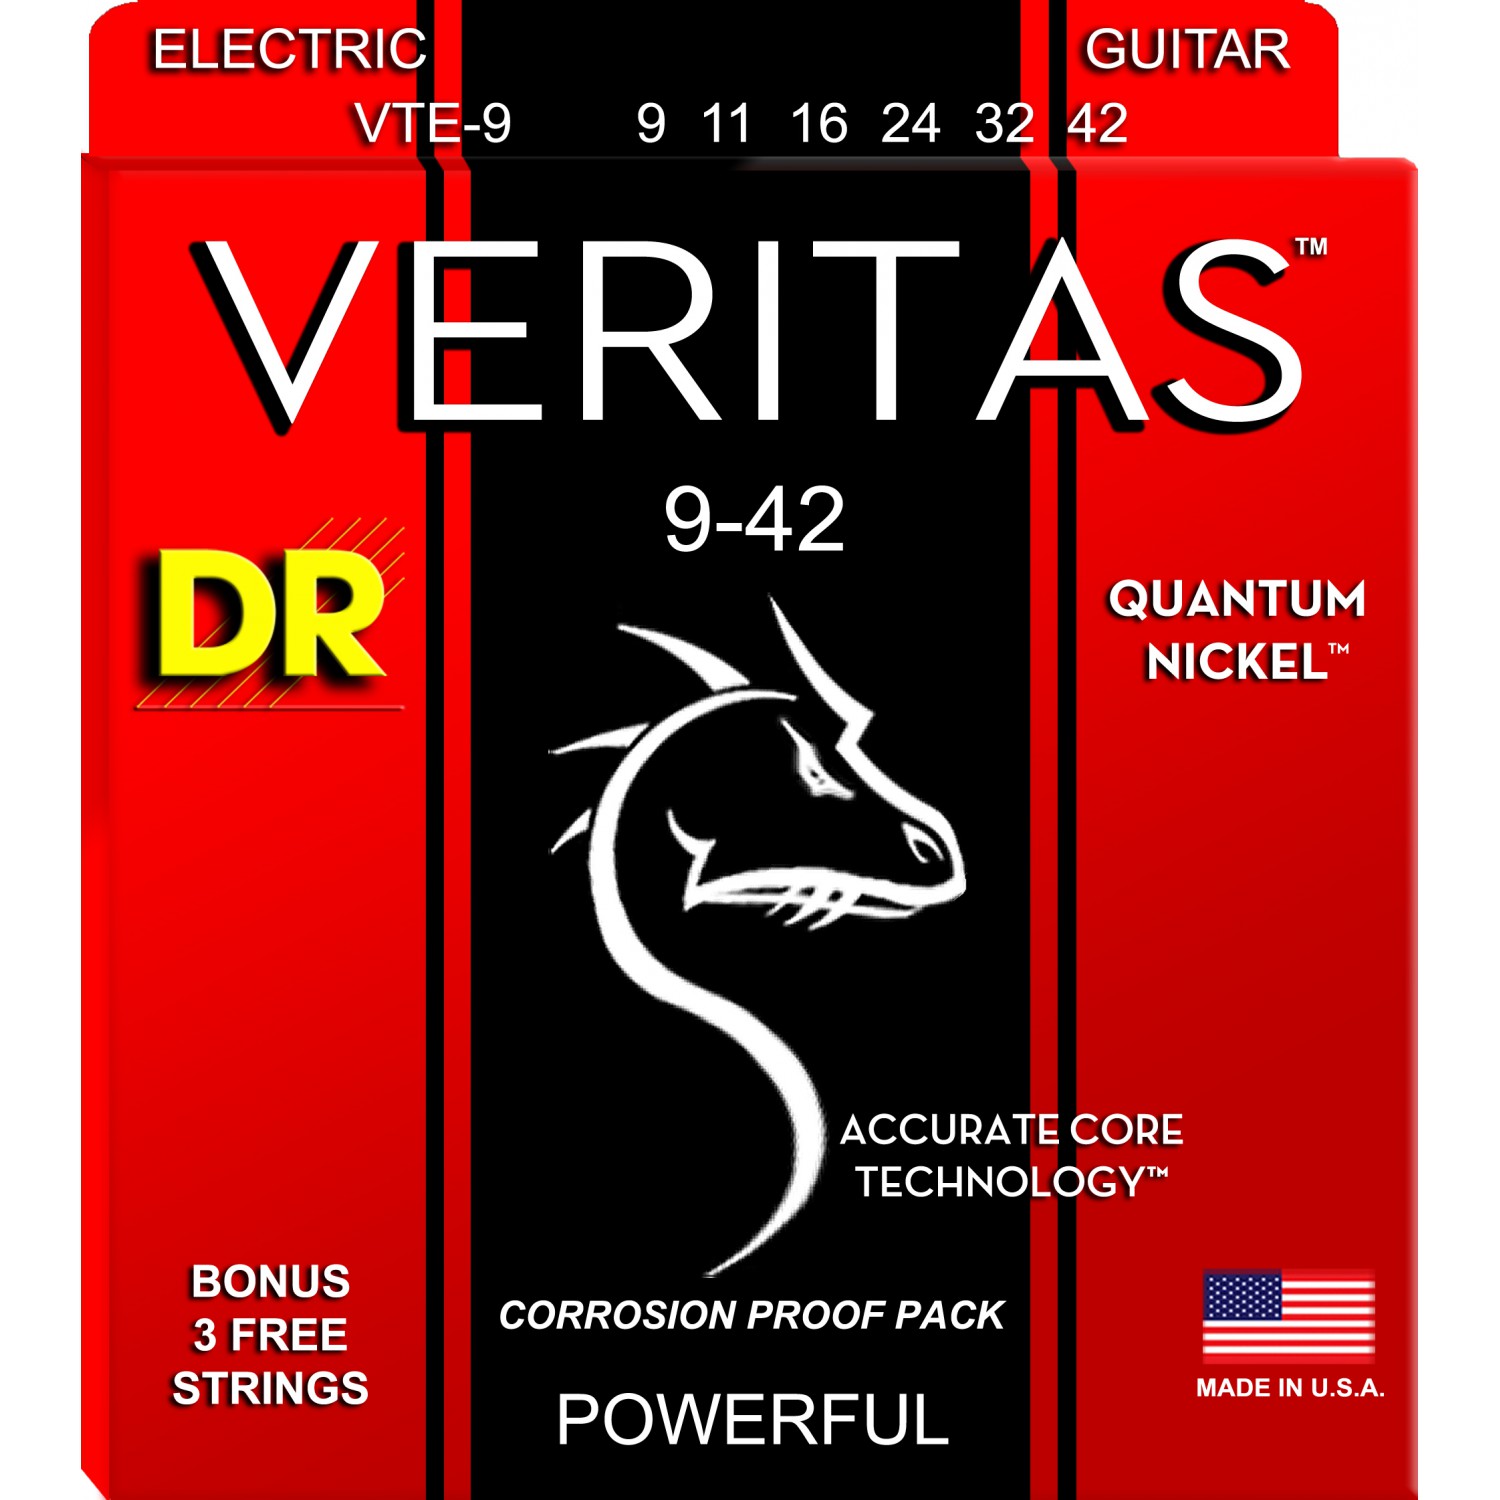 DR VERITAS Quantum Nickel - VTE-9 - struny do gitary elektrycznej Set, Light, .009-.042